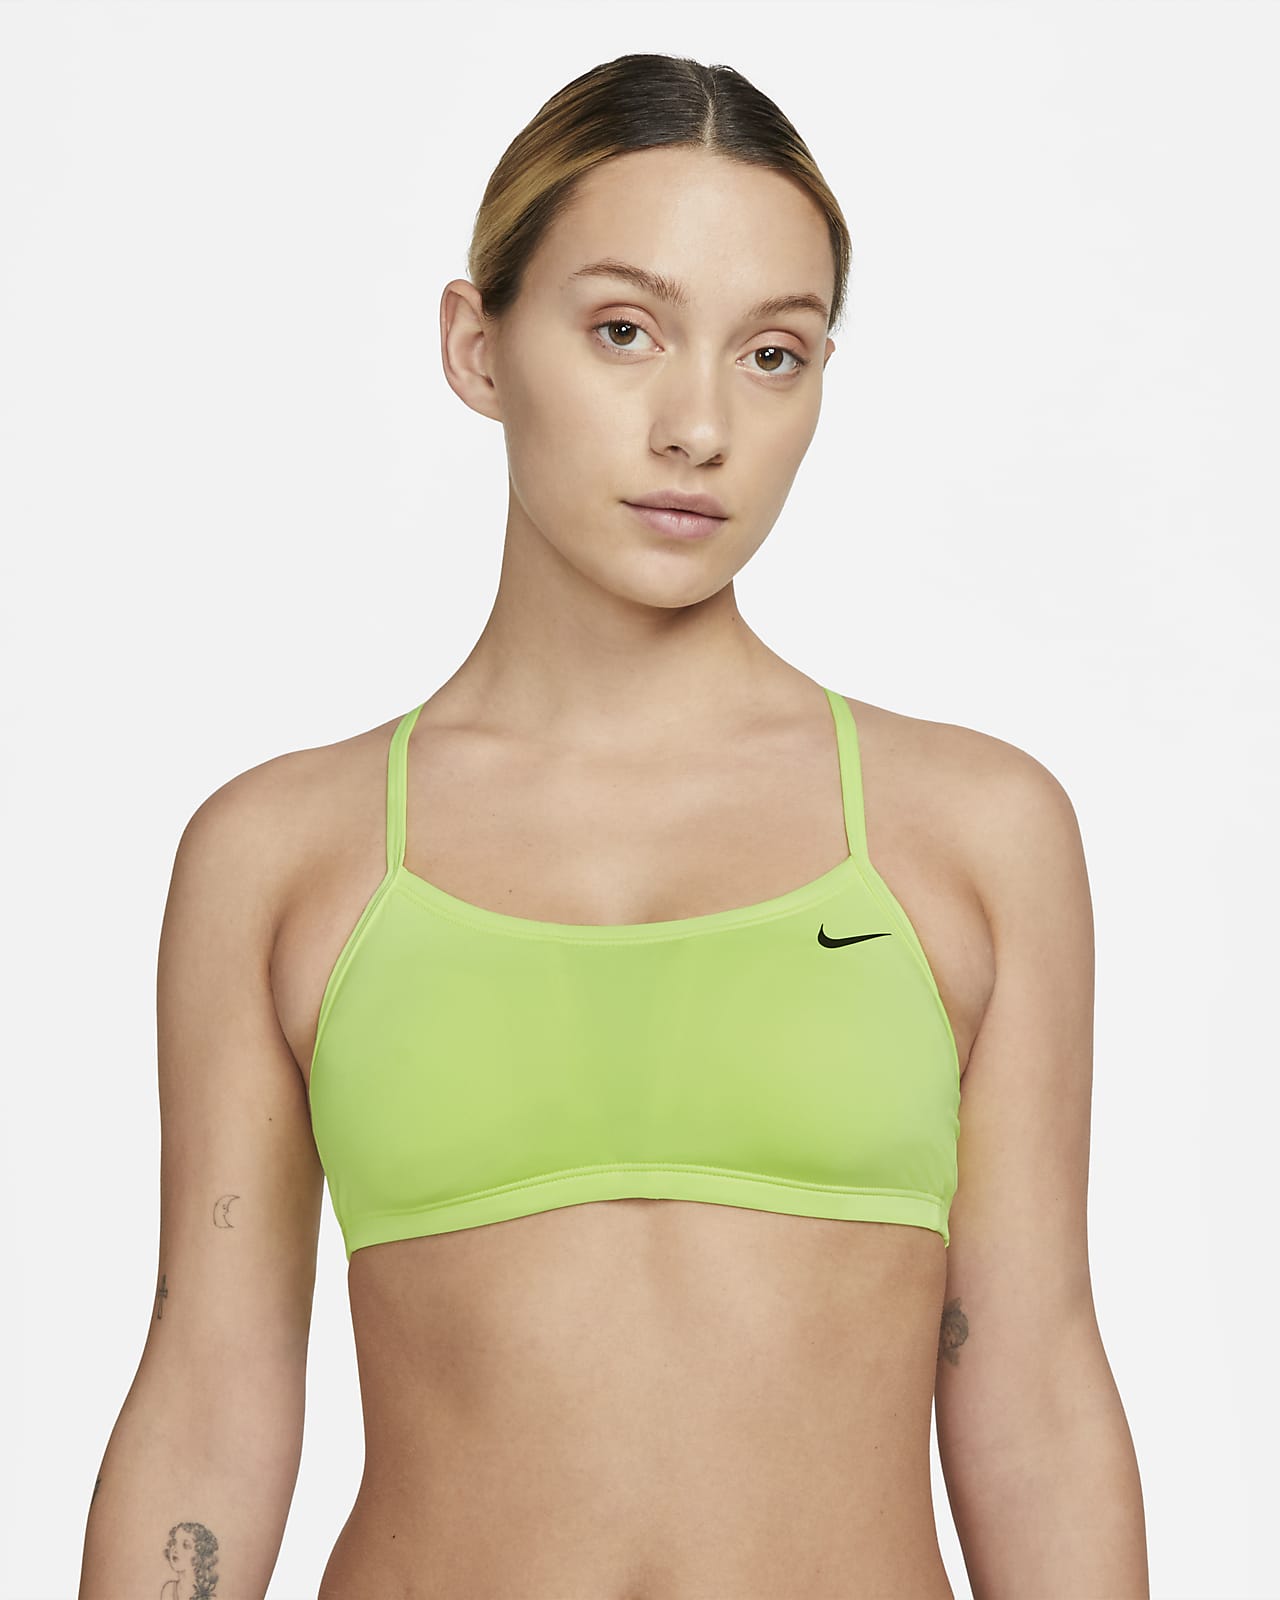 Nike / Women's Essential Futura Crop Top